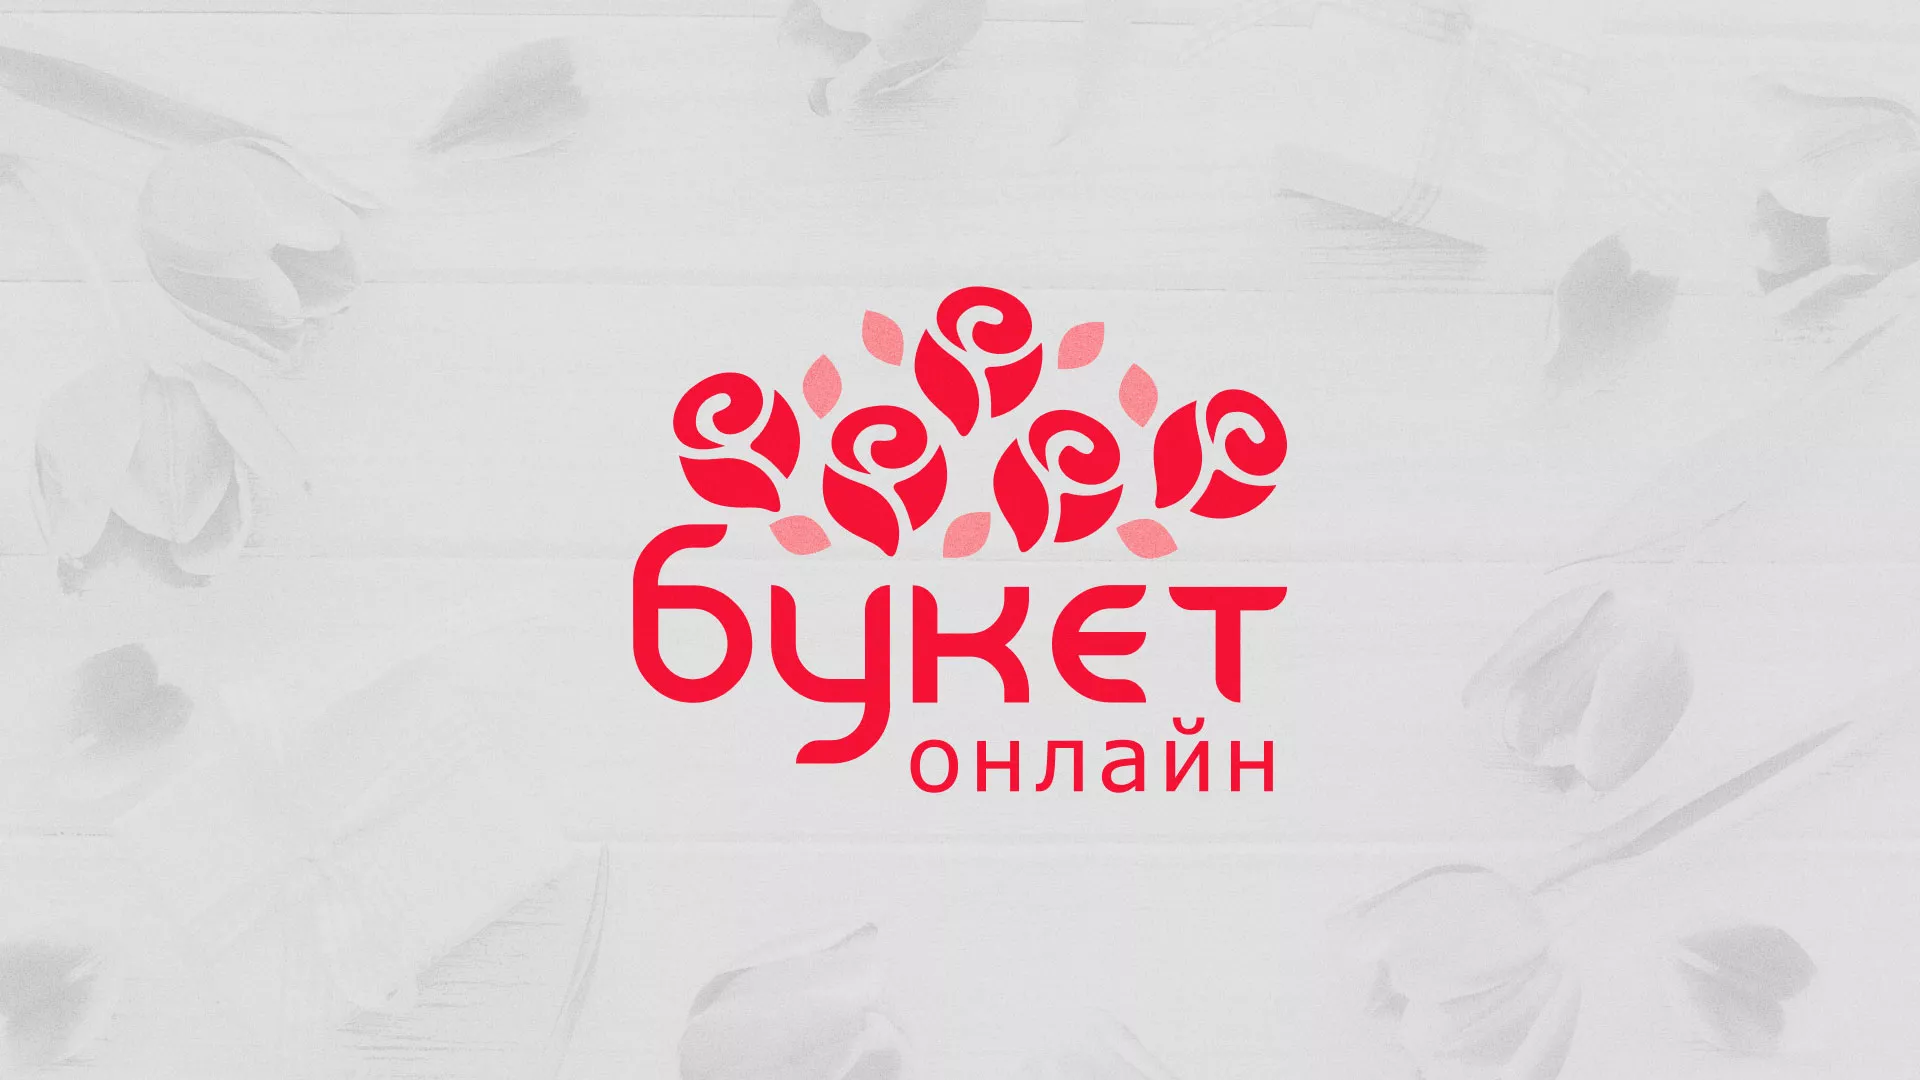 Создание интернет-магазина «Букет-онлайн» по цветам в Трубчевске